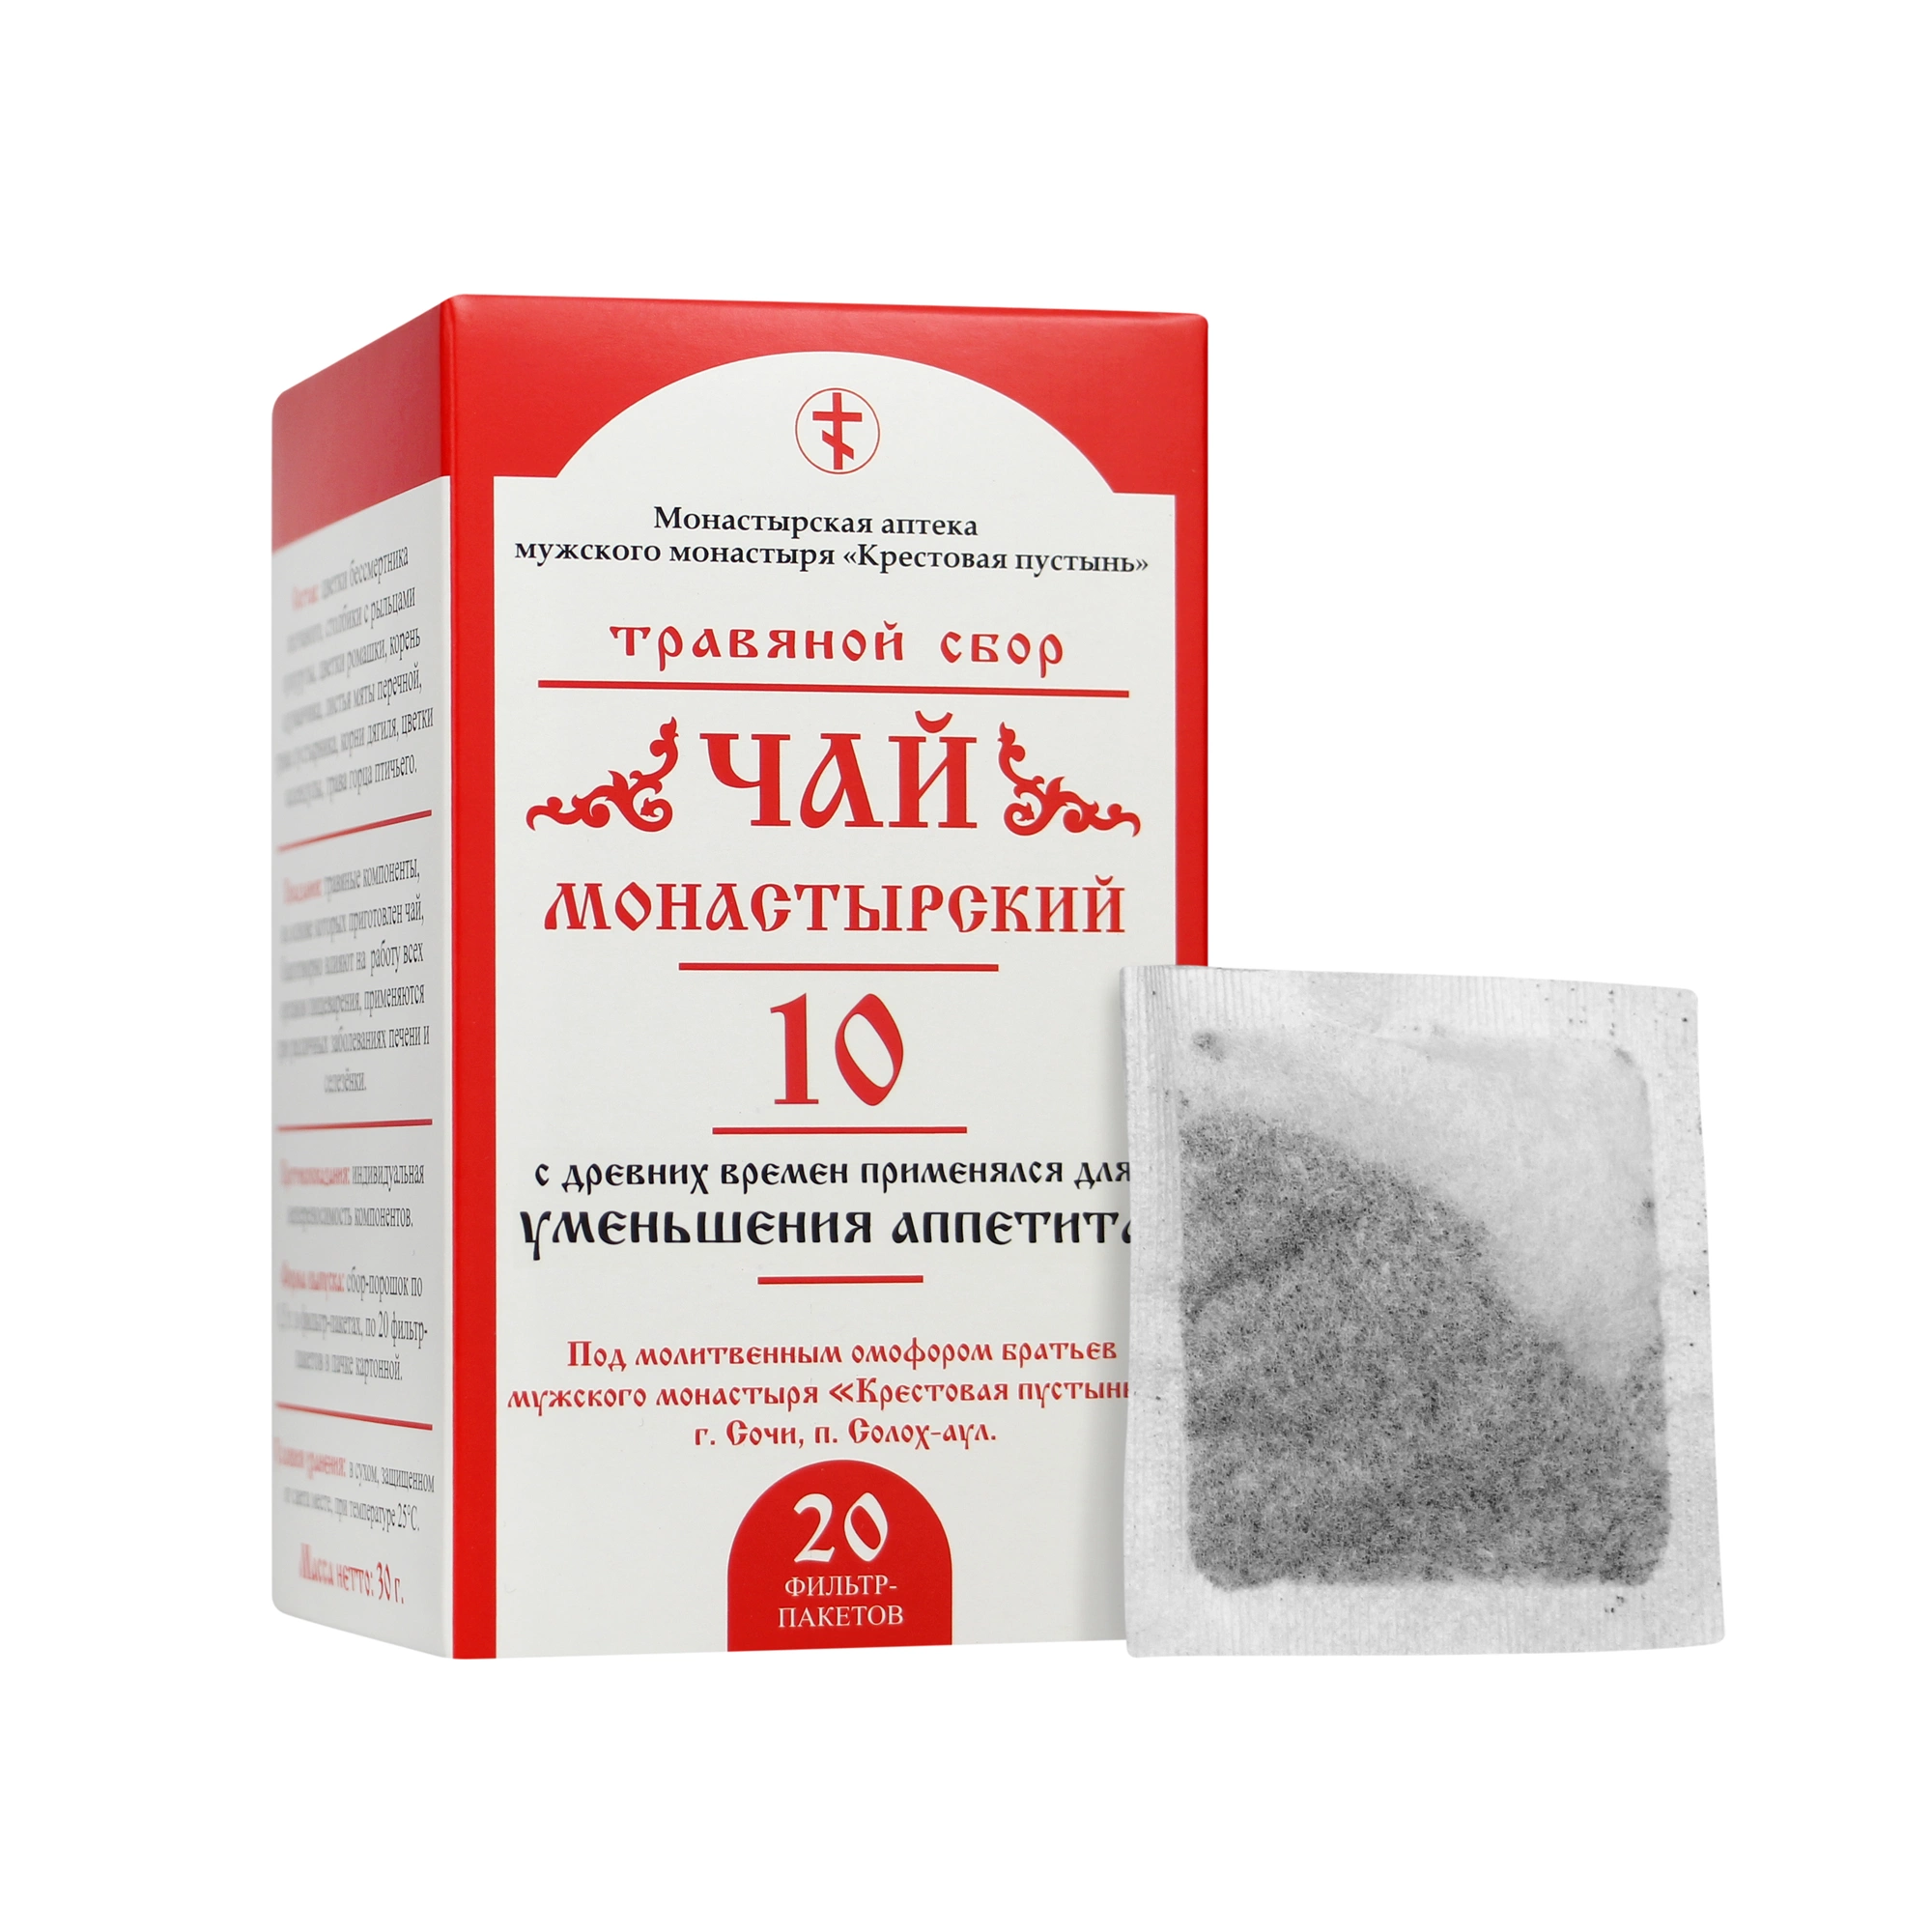 Чай Монастырский №10, для уменьшения аппетита, 20 пакетиков, 30 г, "Солох-Аул"